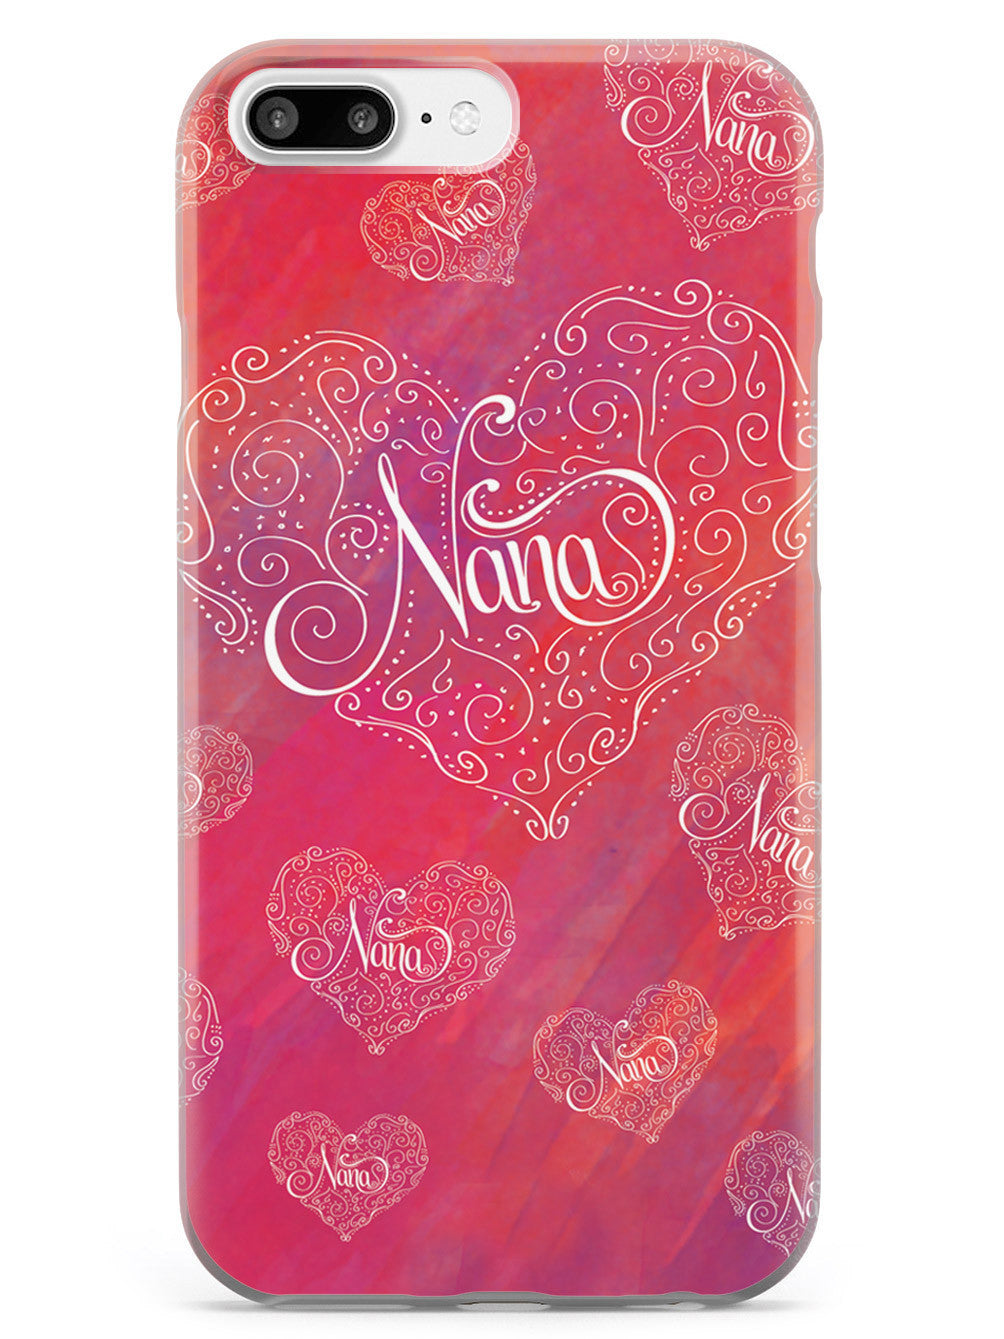 Nana Doodle Heart Design Case